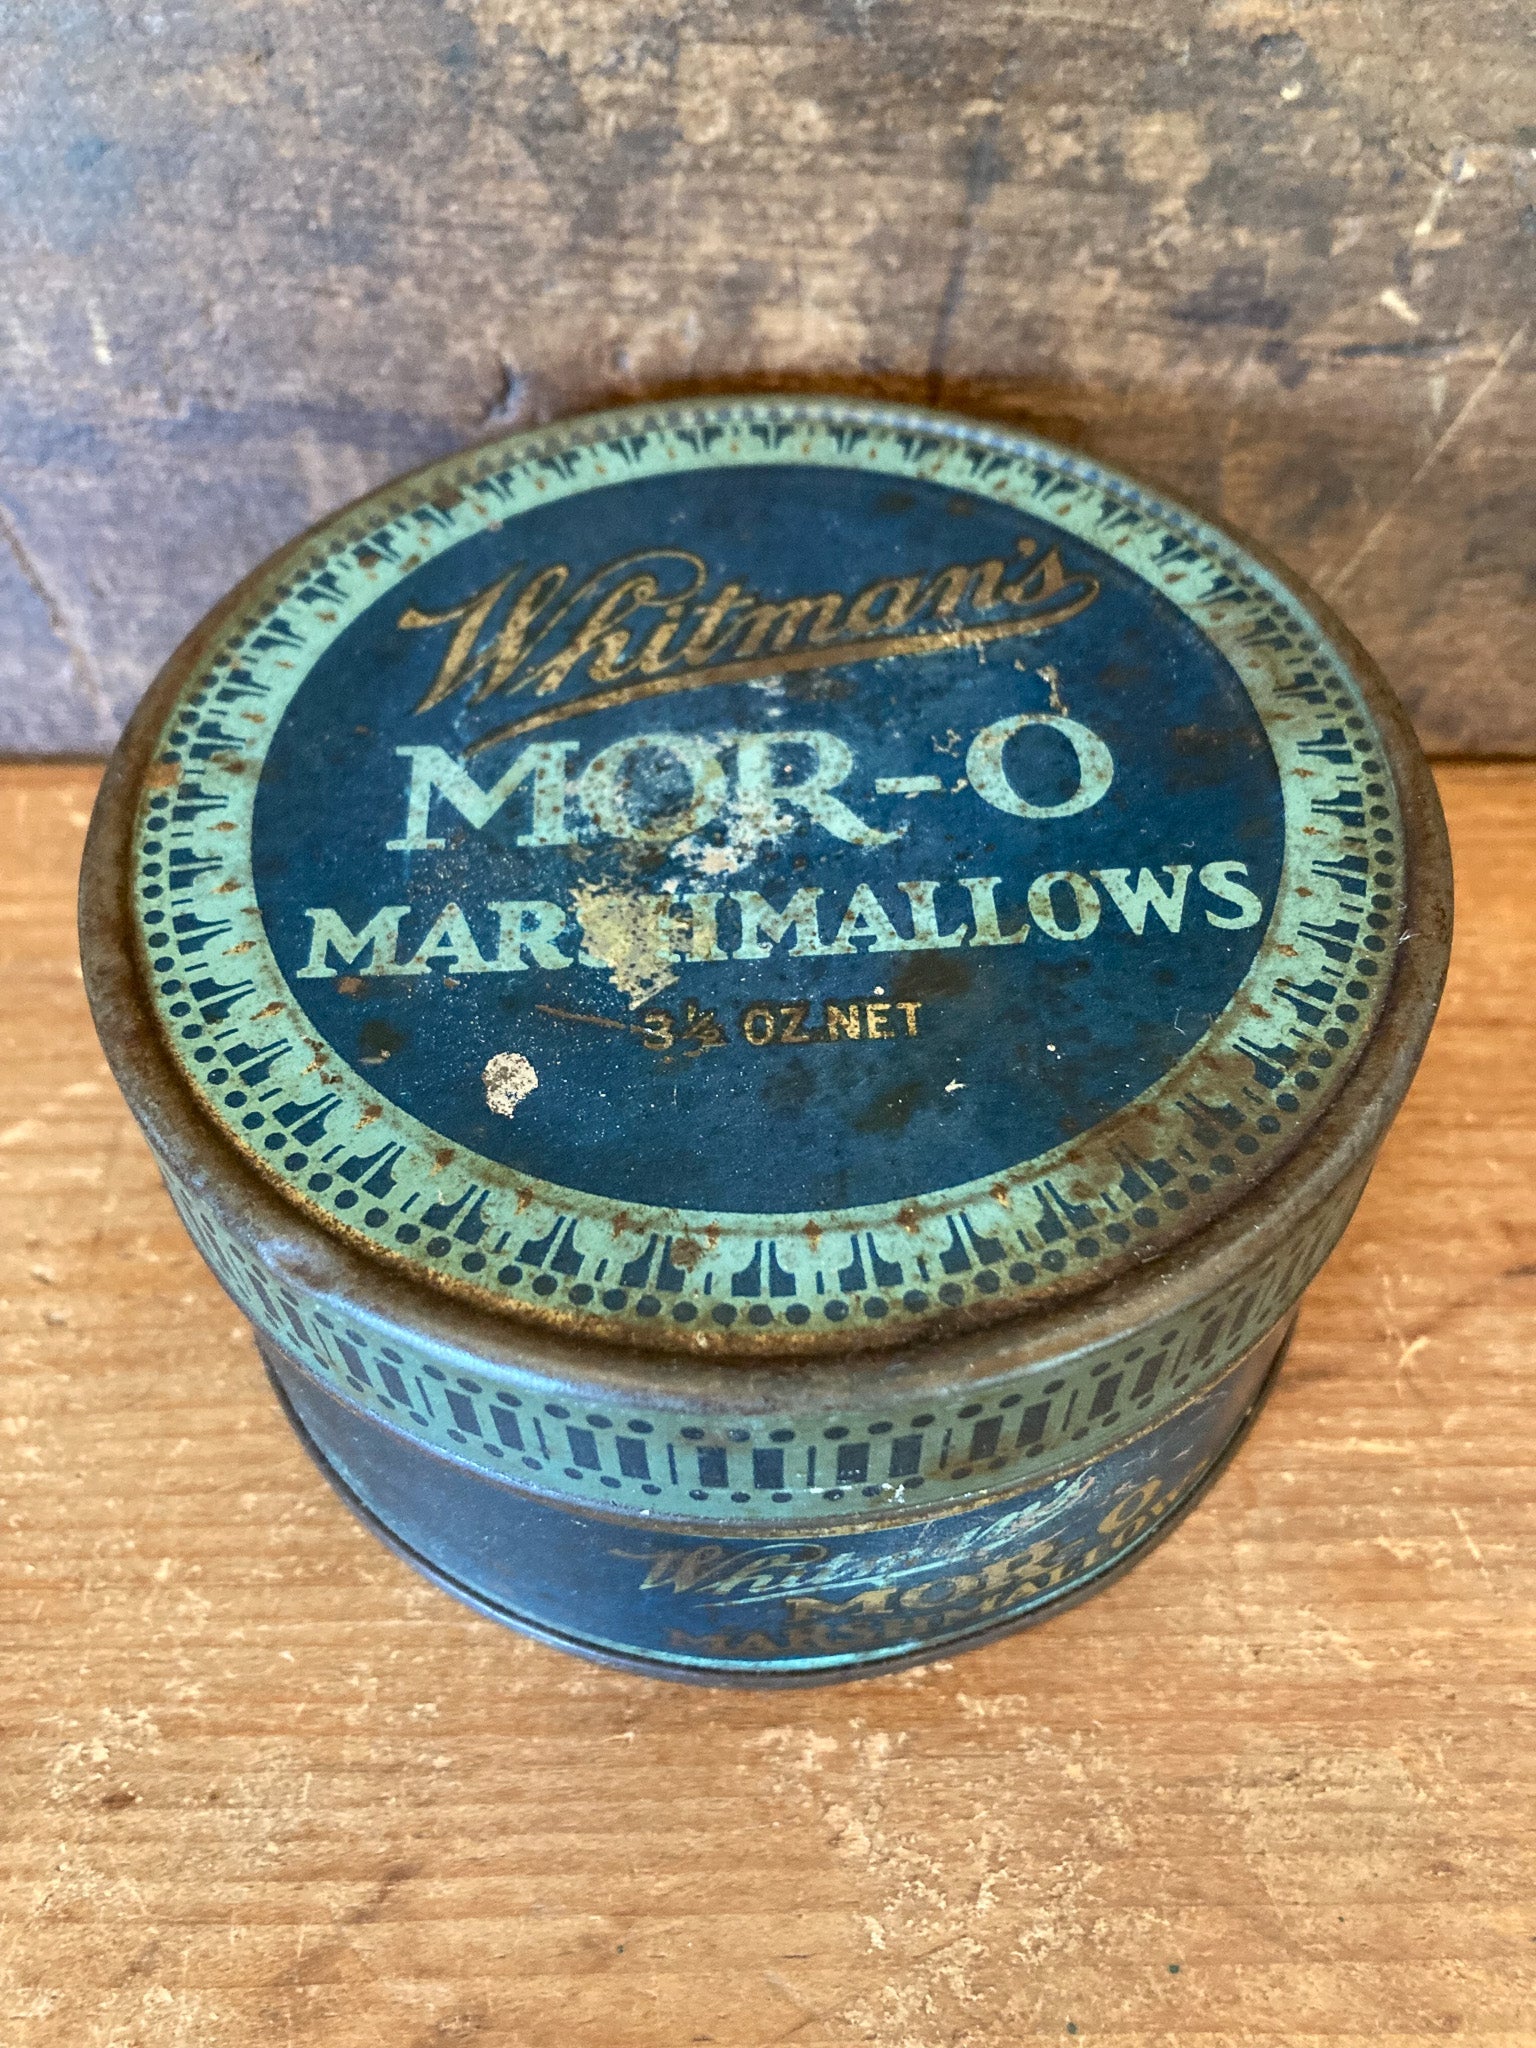 1930’s Whitman’s Mor-O Marshmallows Tin